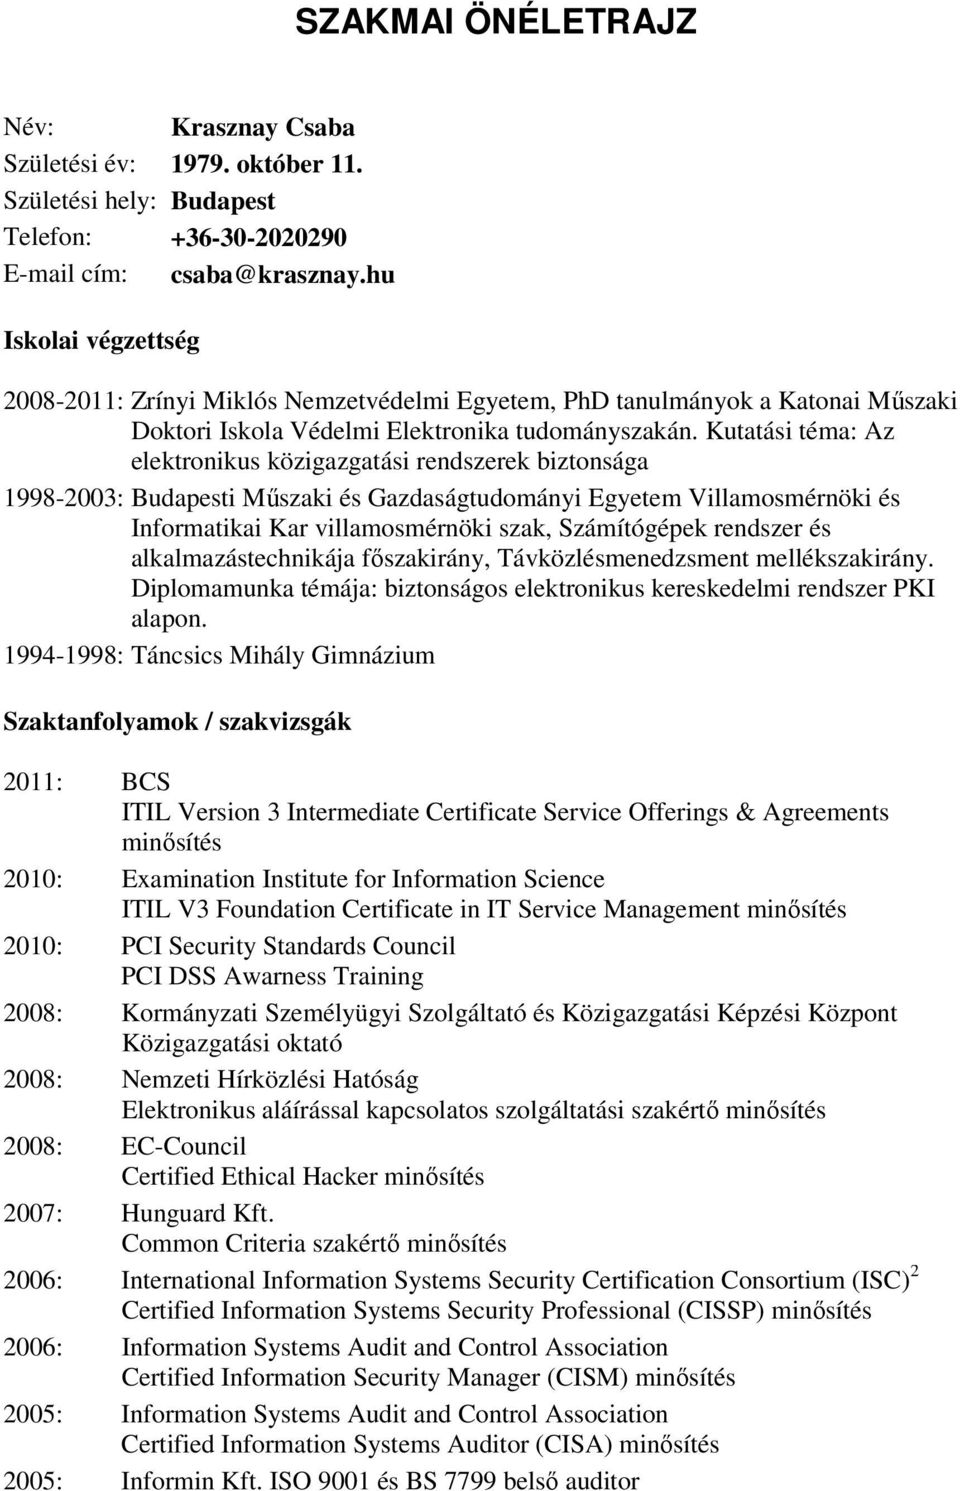 Kutatási téma: Az elektronikus közigazgatási rendszerek biztonsága 1998-2003: Budapesti Műszaki és Gazdaságtudományi Egyetem Villamosmérnöki és Informatikai Kar villamosmérnöki szak, Számítógépek